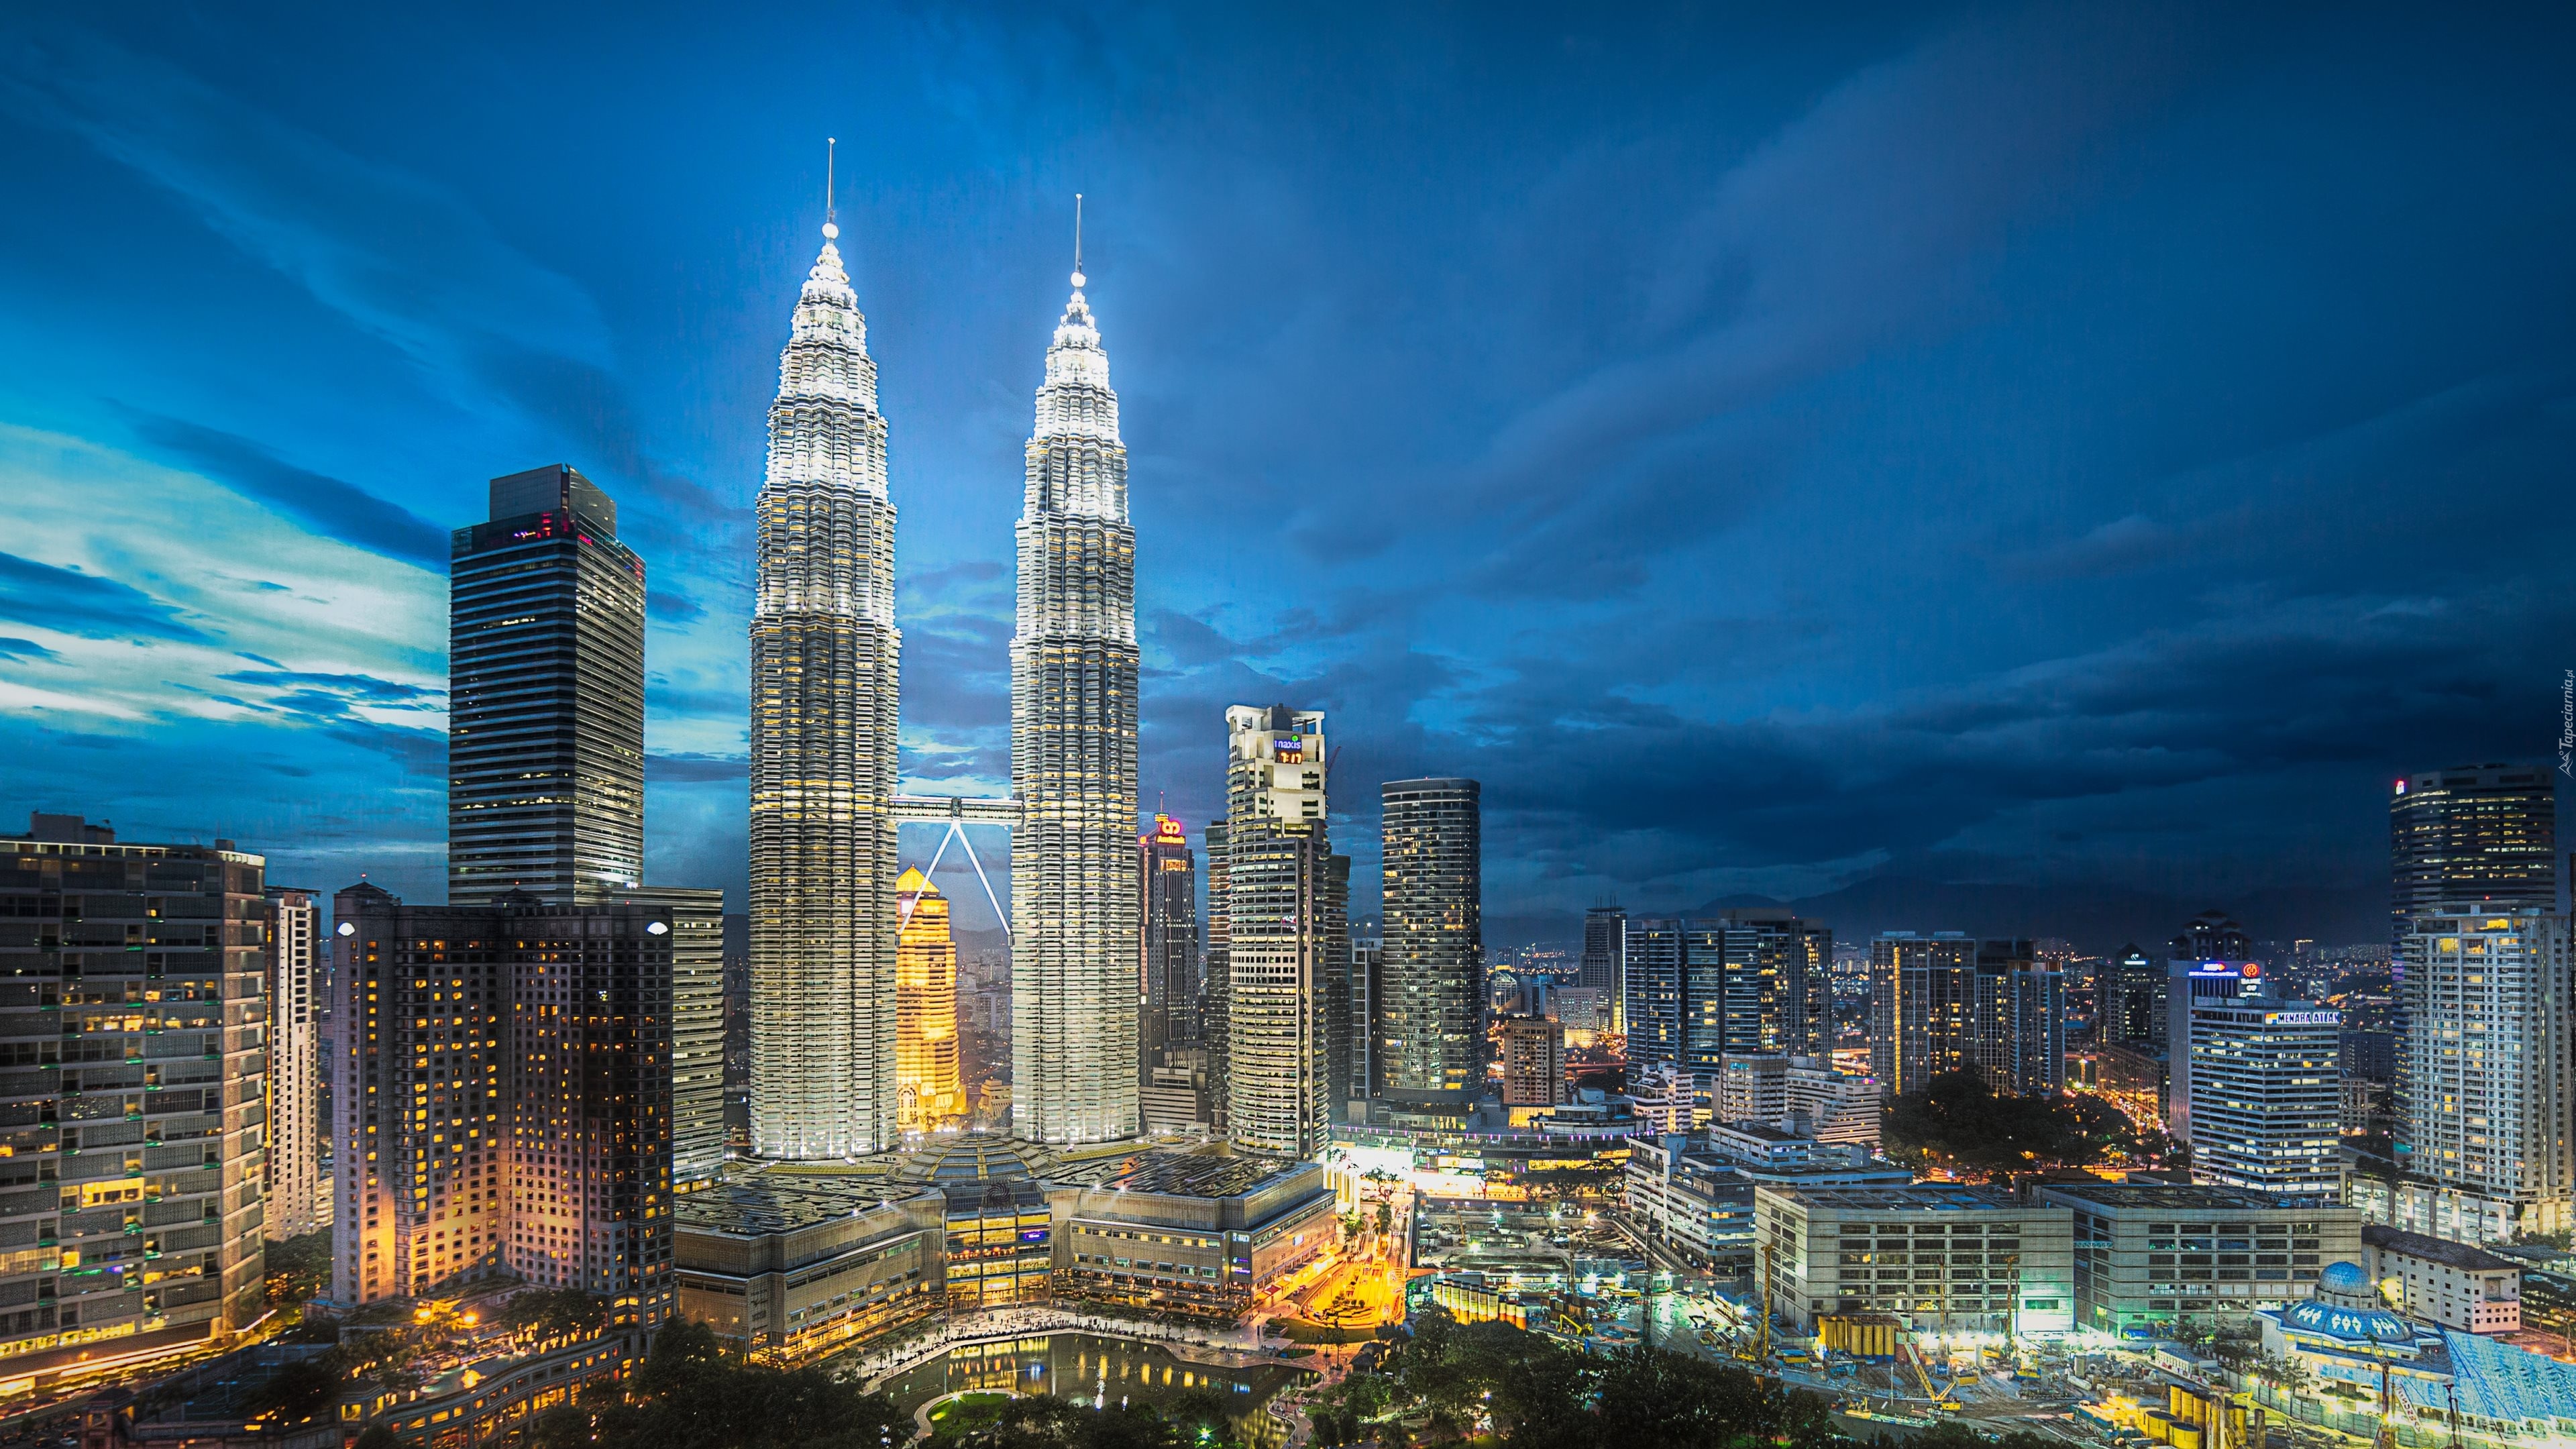 Malezja, Kuala Lumpur, Miasto, Noc, Petronas Towers